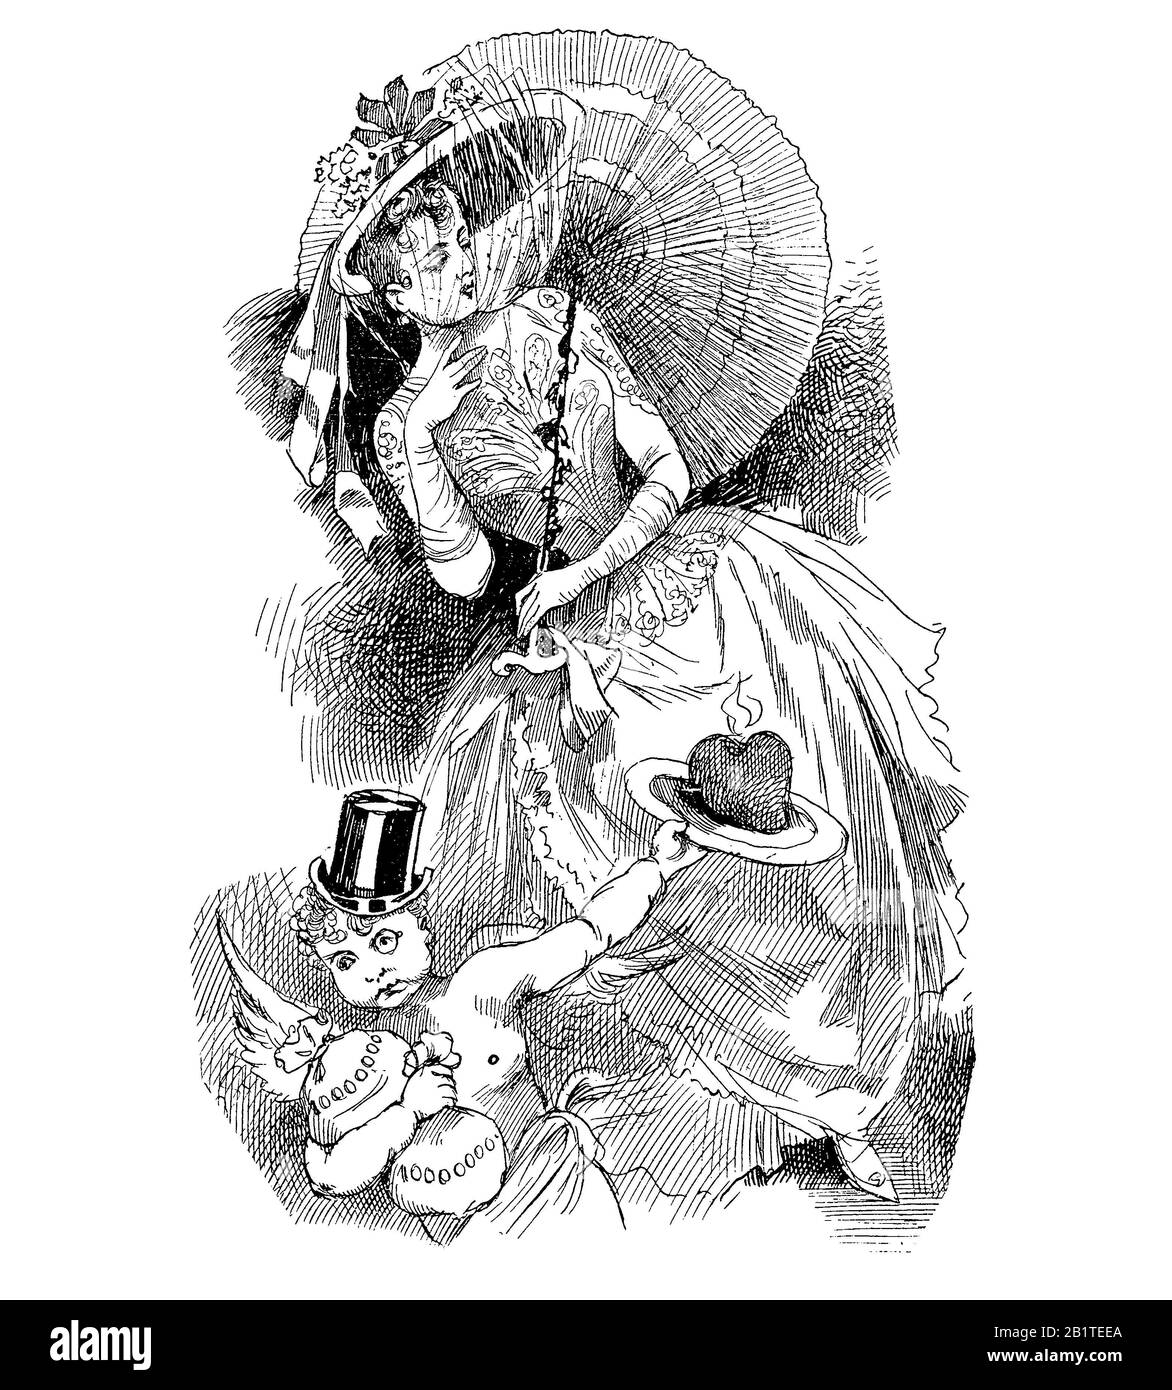 Cupid maskiert als wohlhabender Bau mit Hut, und Monokle bietet ein brennendes Herz für eine modische snooty junge Frau, die mit Sonnenschirm bekleidet ist Stockfoto